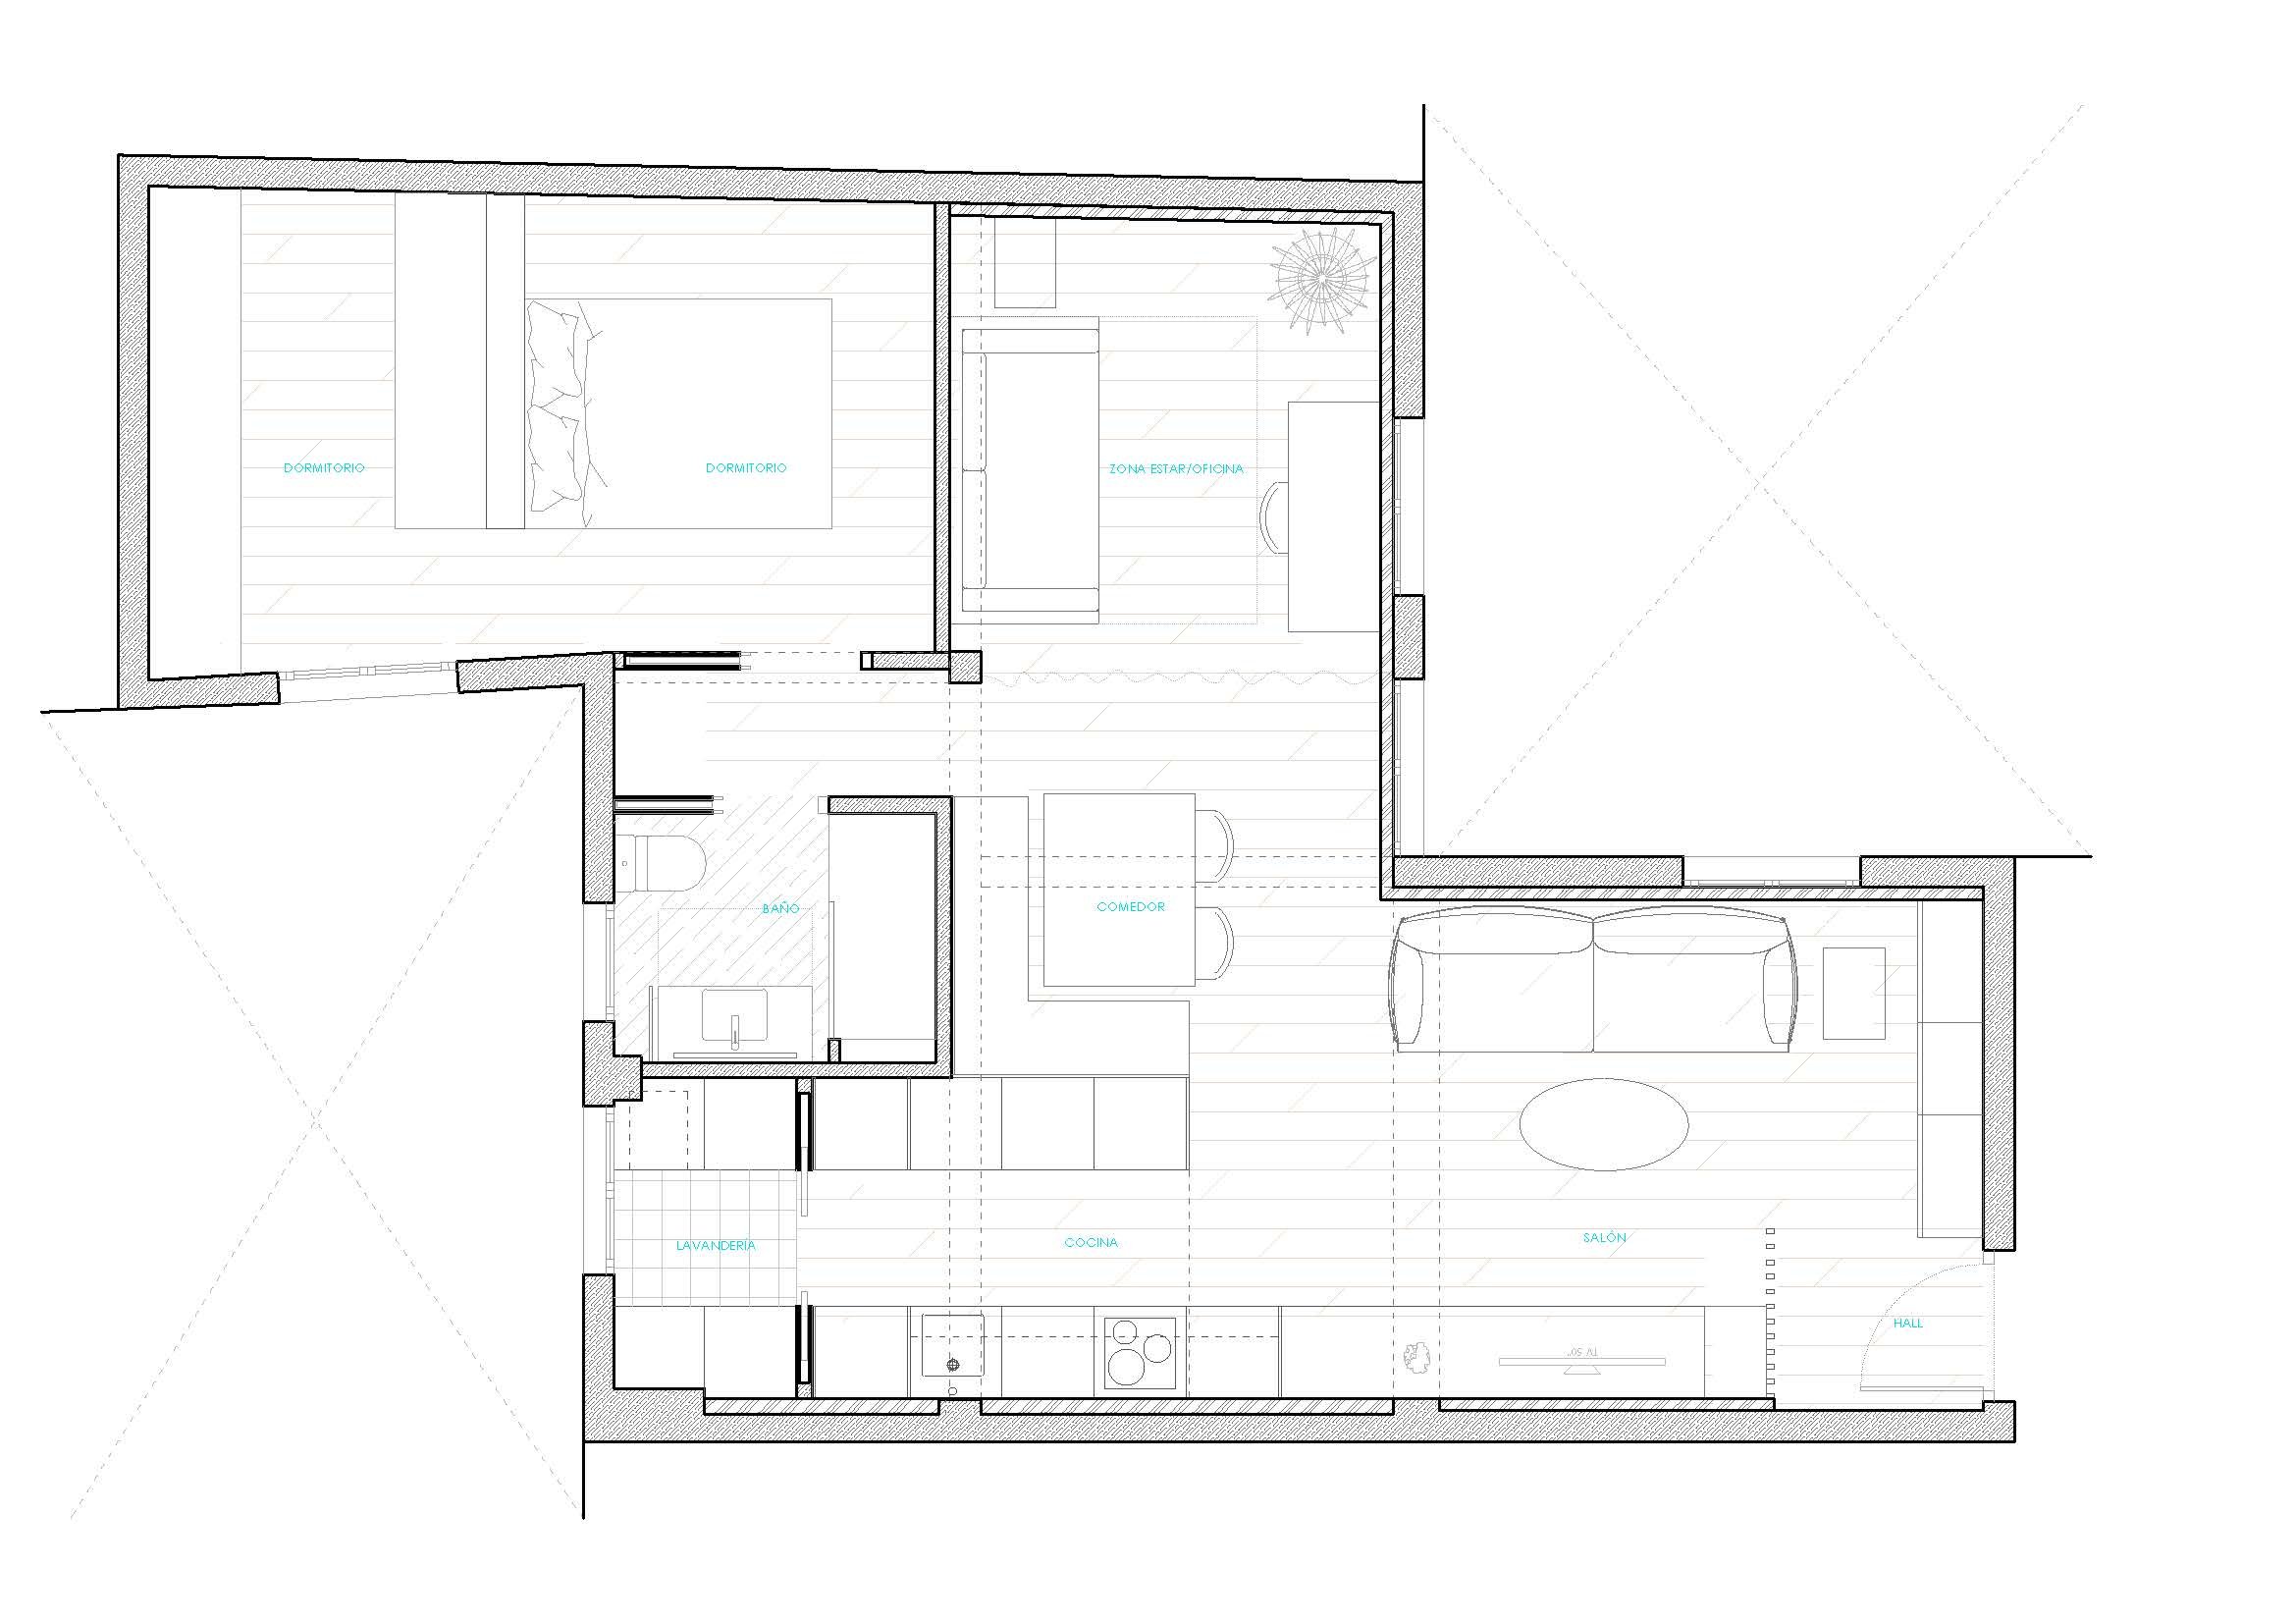 diseño interior planos reforma madrid antonia y silvia.jpg